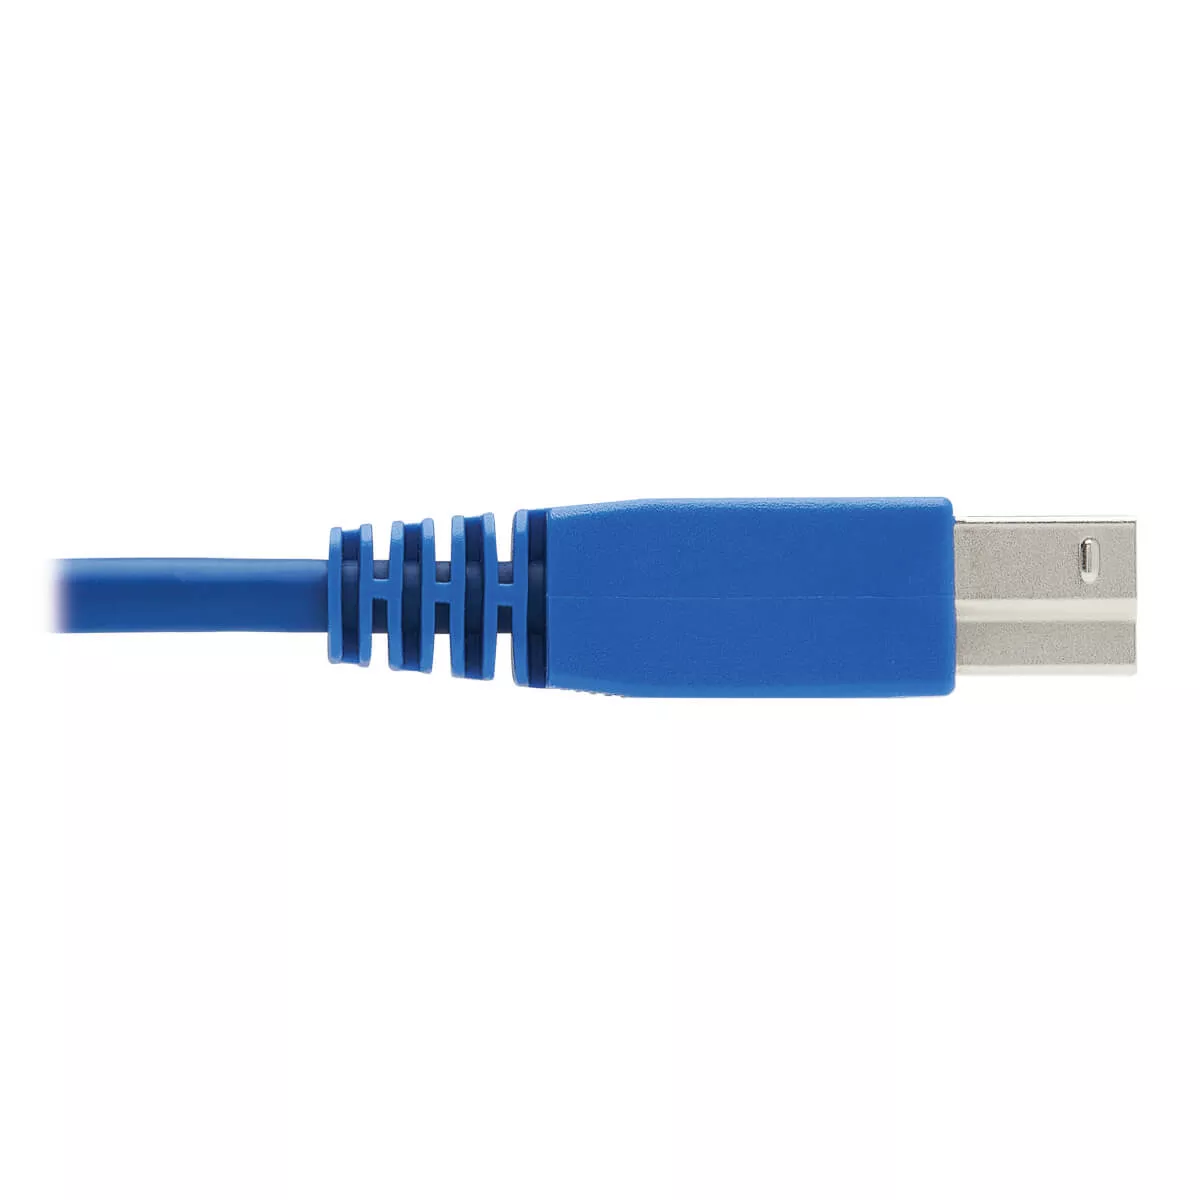 Vente EATON TRIPPLITE HDMI KVM Cable Kit for Tripp Tripp Lite au meilleur prix - visuel 10